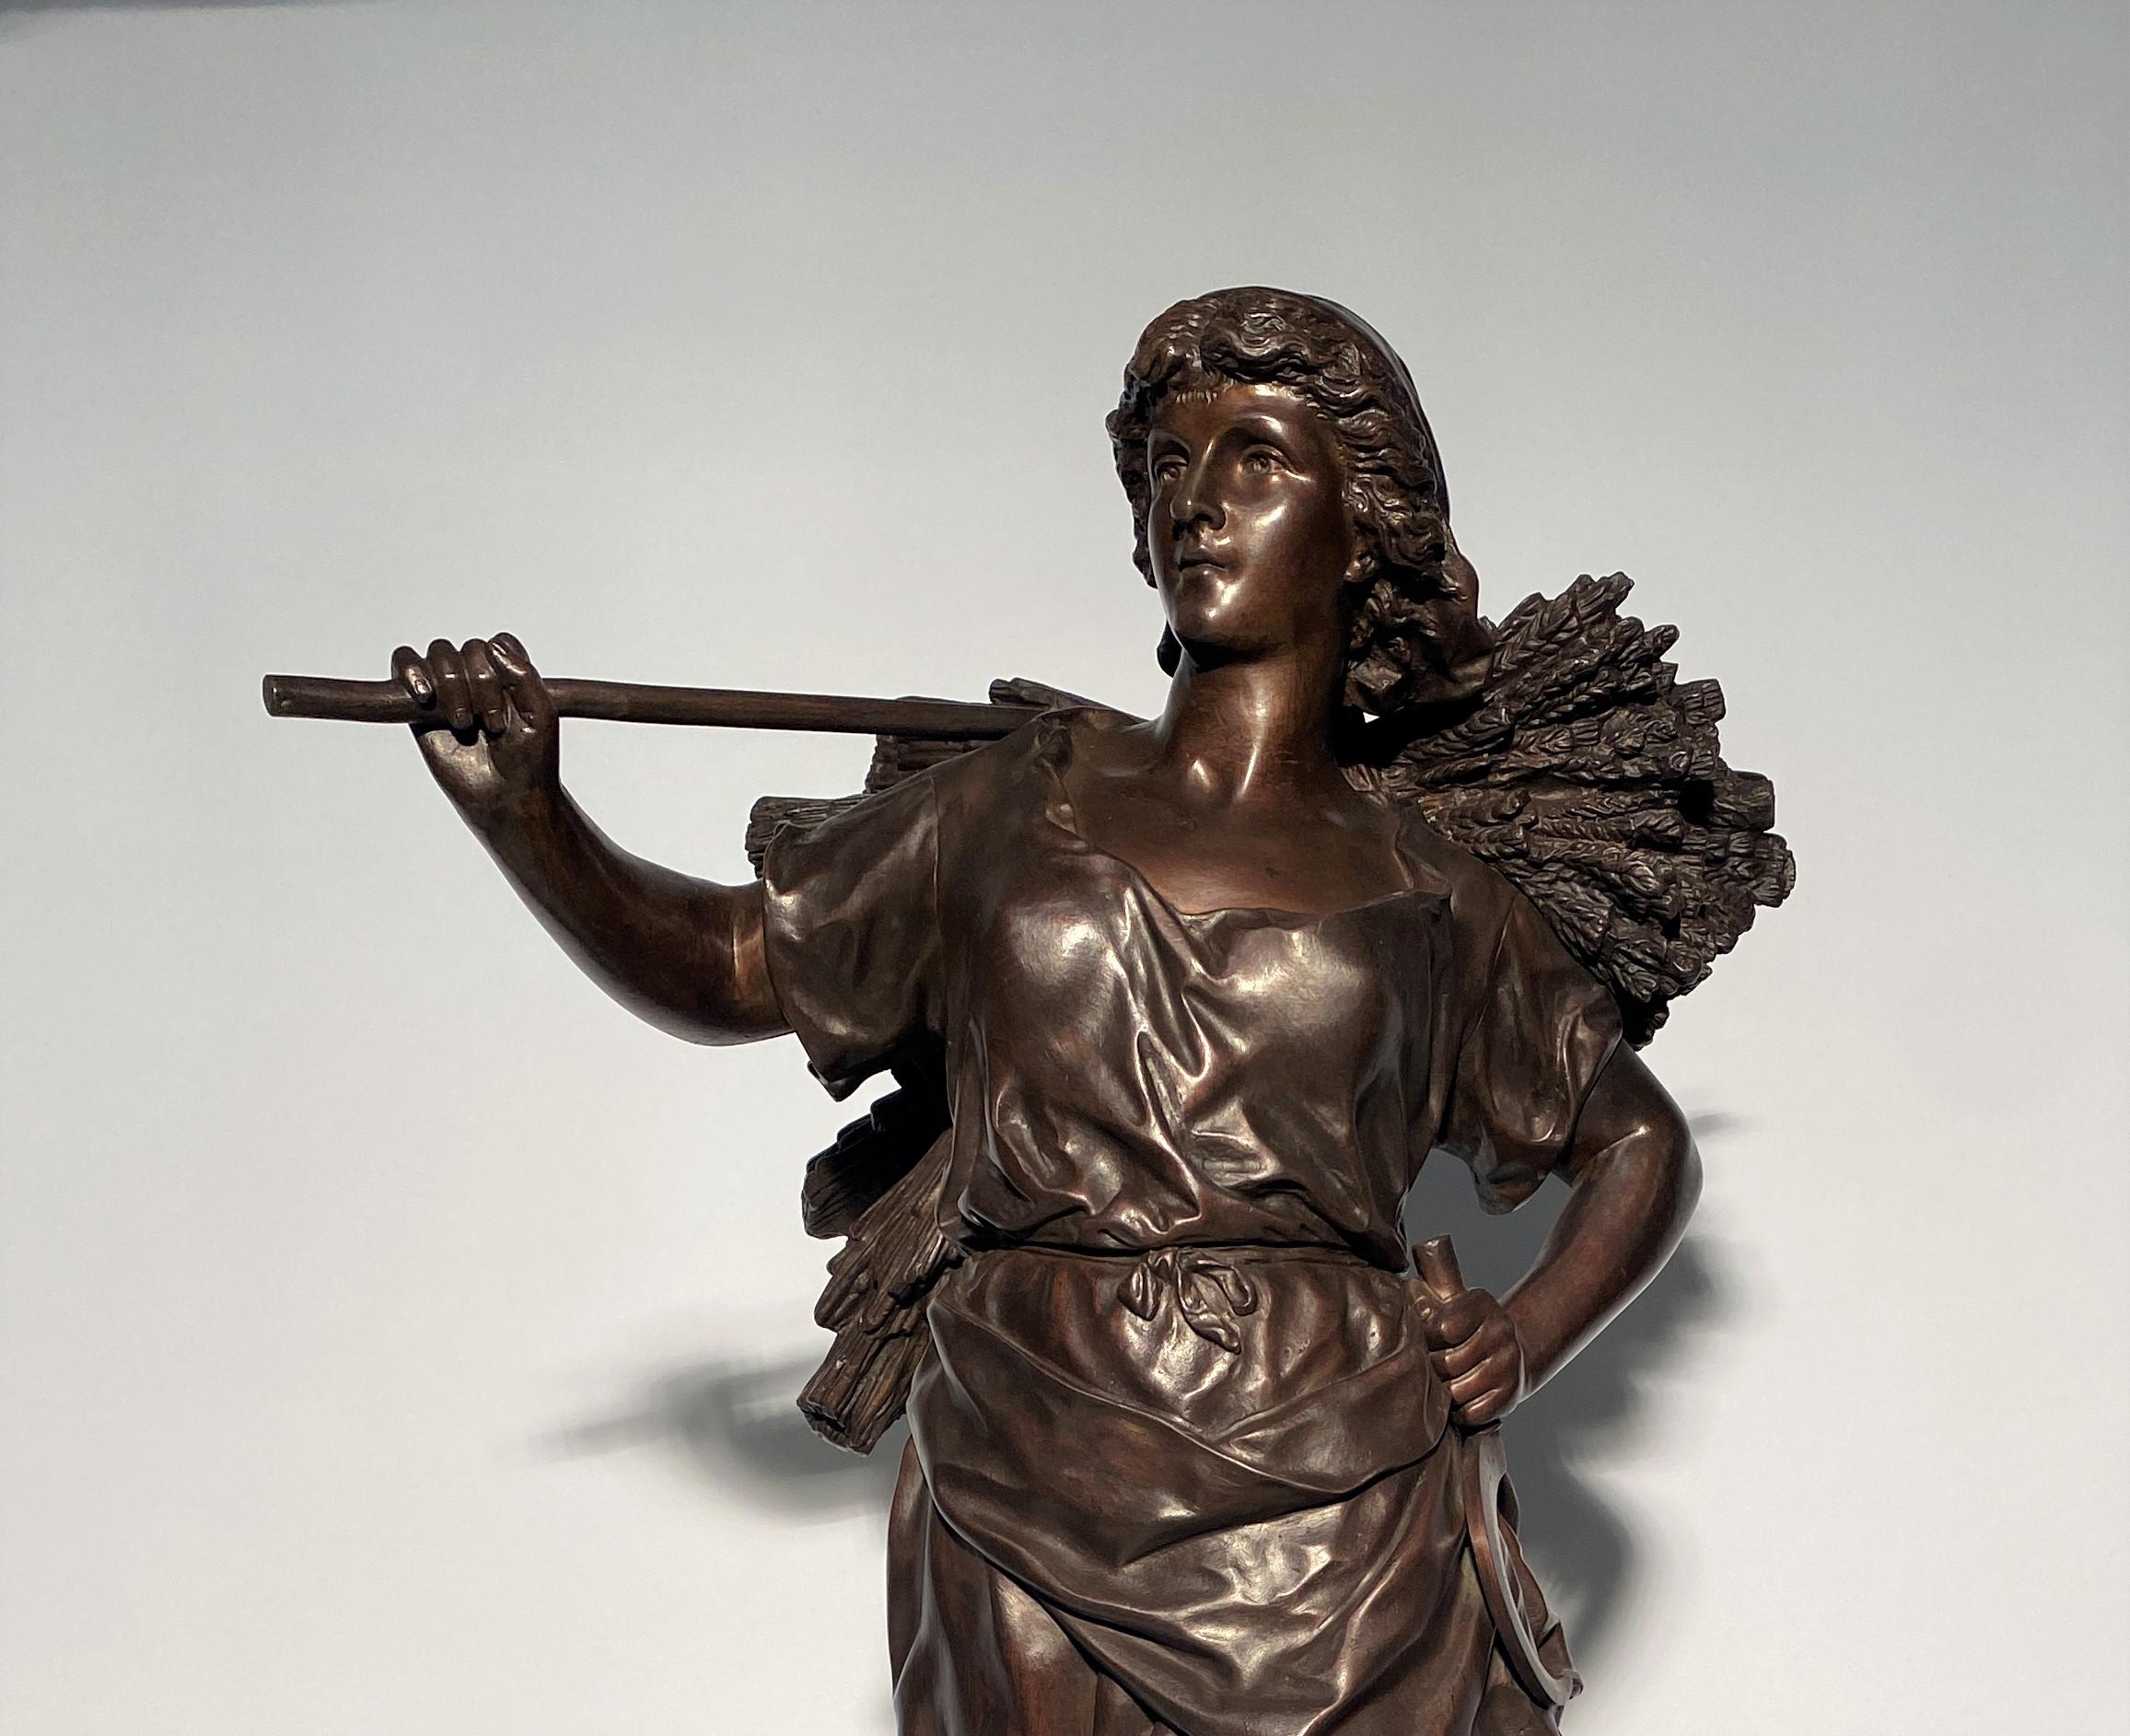 Importante sculpture en bronze à patine brune représentant une jeune femme moissonneuse revenant du travail dans les champs. Notez la belle expression du visage soulignant la satisfaction du travail. Cette œuvre est grande et sculptée sur tous les